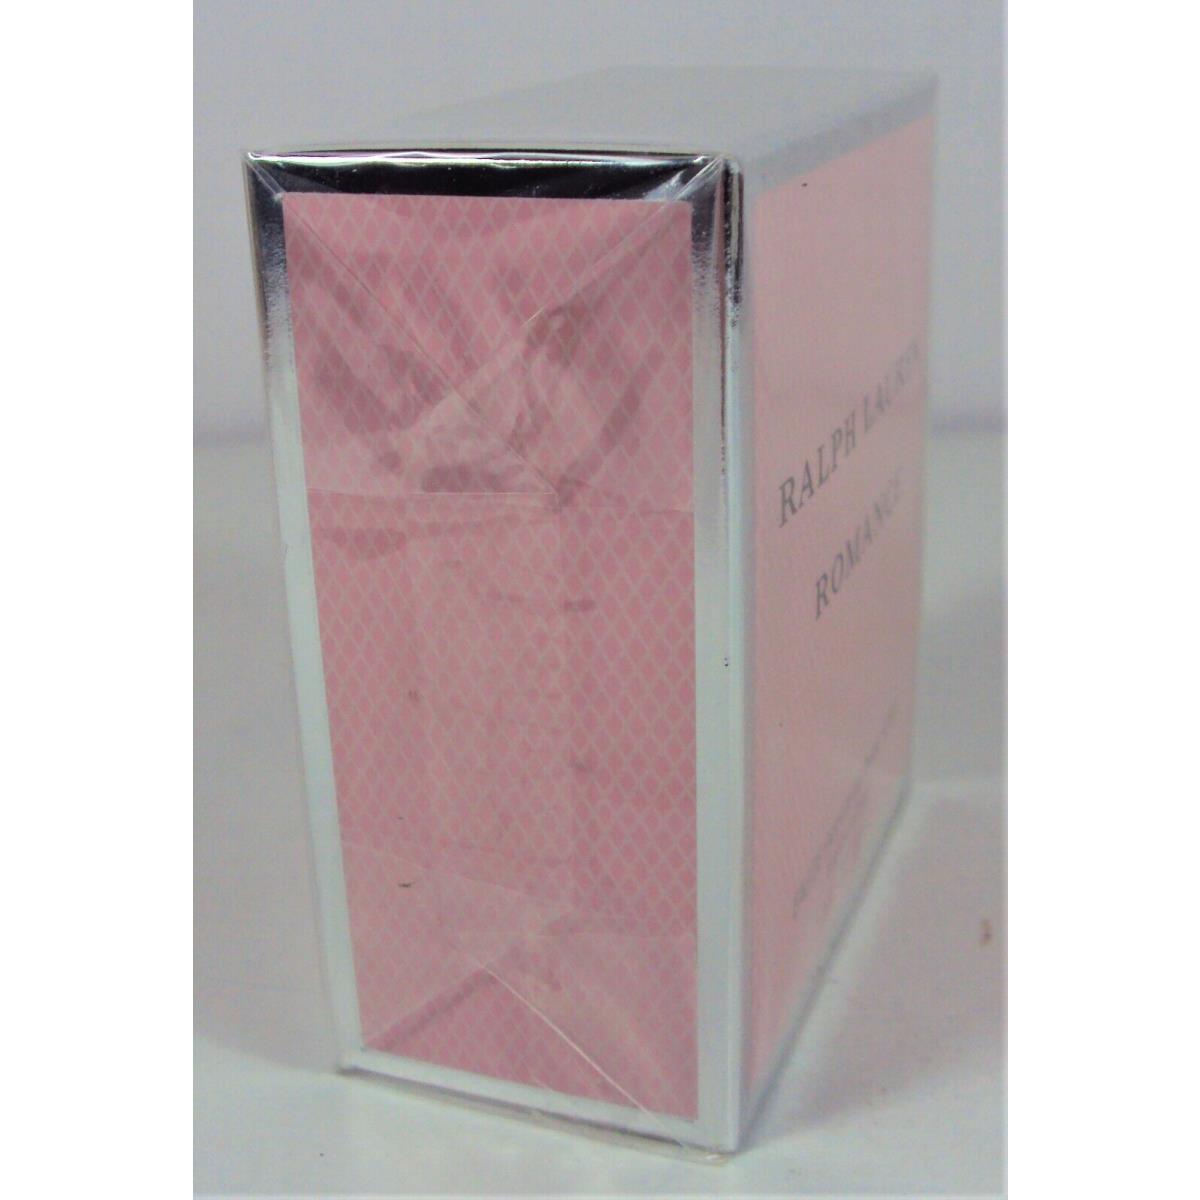 Romance by Ralph Lauren Eau de Parfum Spray 1.7 oz / 50 ml - Ralph